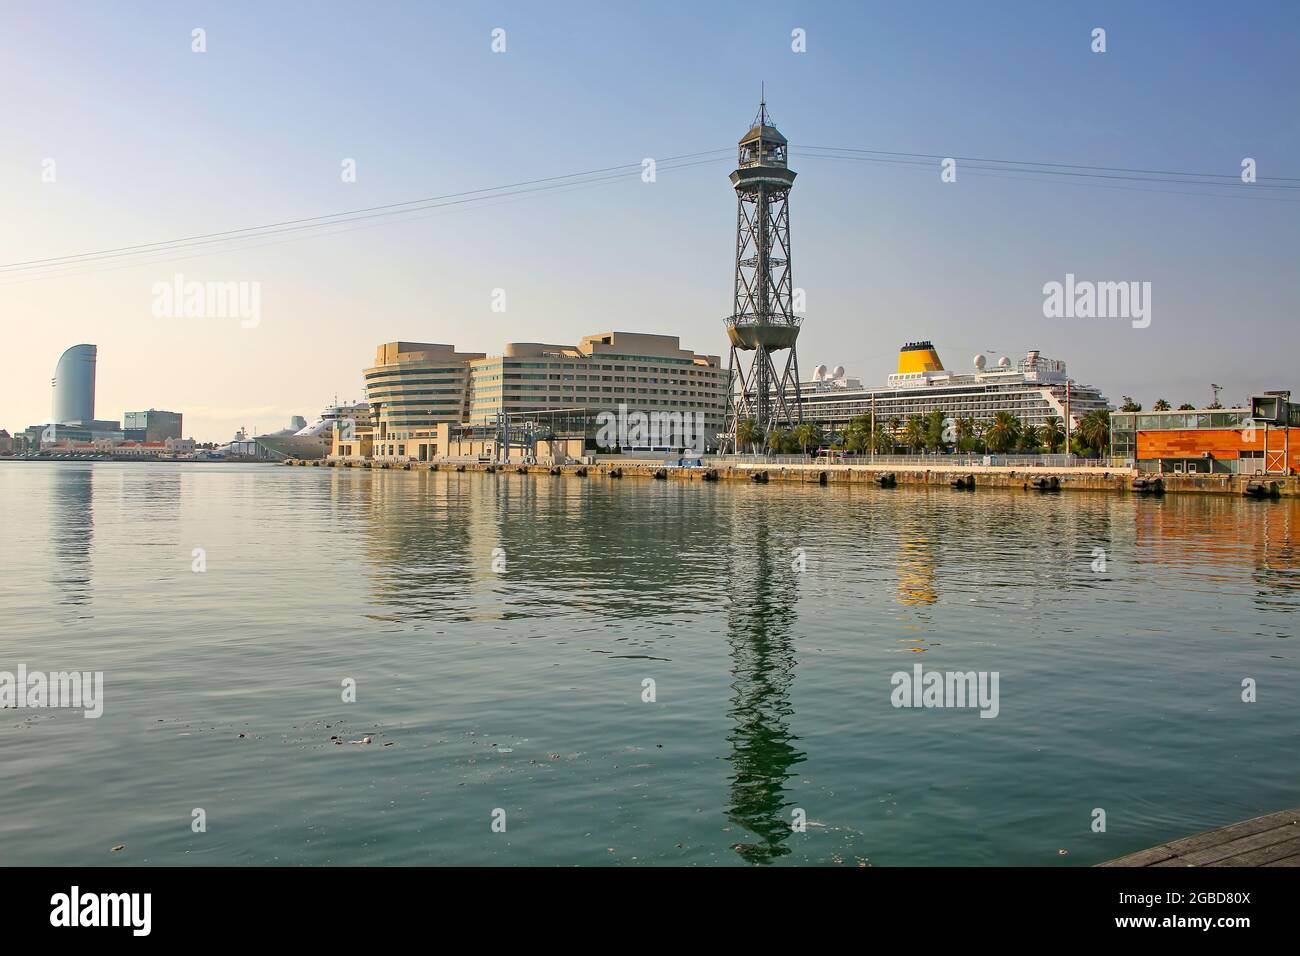 Vista attraverso il porto verso il terminal delle navi da crociera, con le navi ormeggiate, la torre della funivia, e riflessi nel Mar Mediterraneo, Barcellona, Spagna. Foto Stock